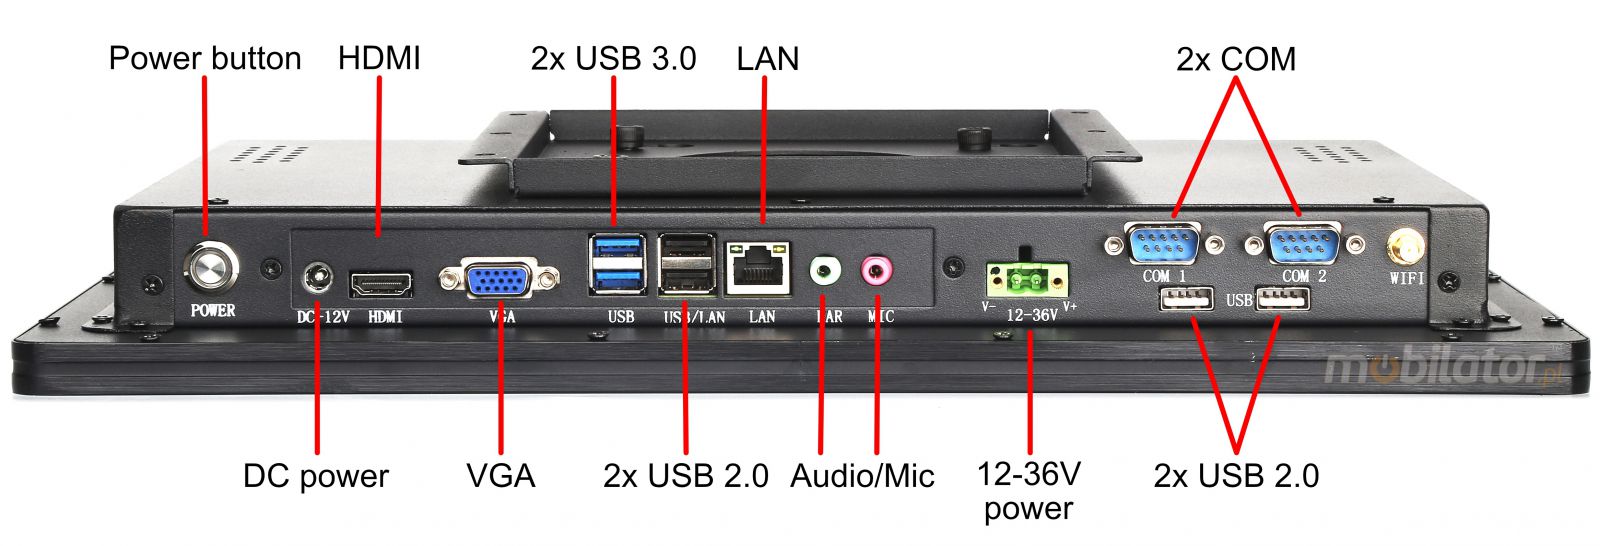 BiBOX-185PC1 (i3-4005U)v.5 - Wzmocniony panel komputerowy z IP65 (odporno woda i py) z dyskiem SSD 256 GB, technologi 4G oraz WiFi